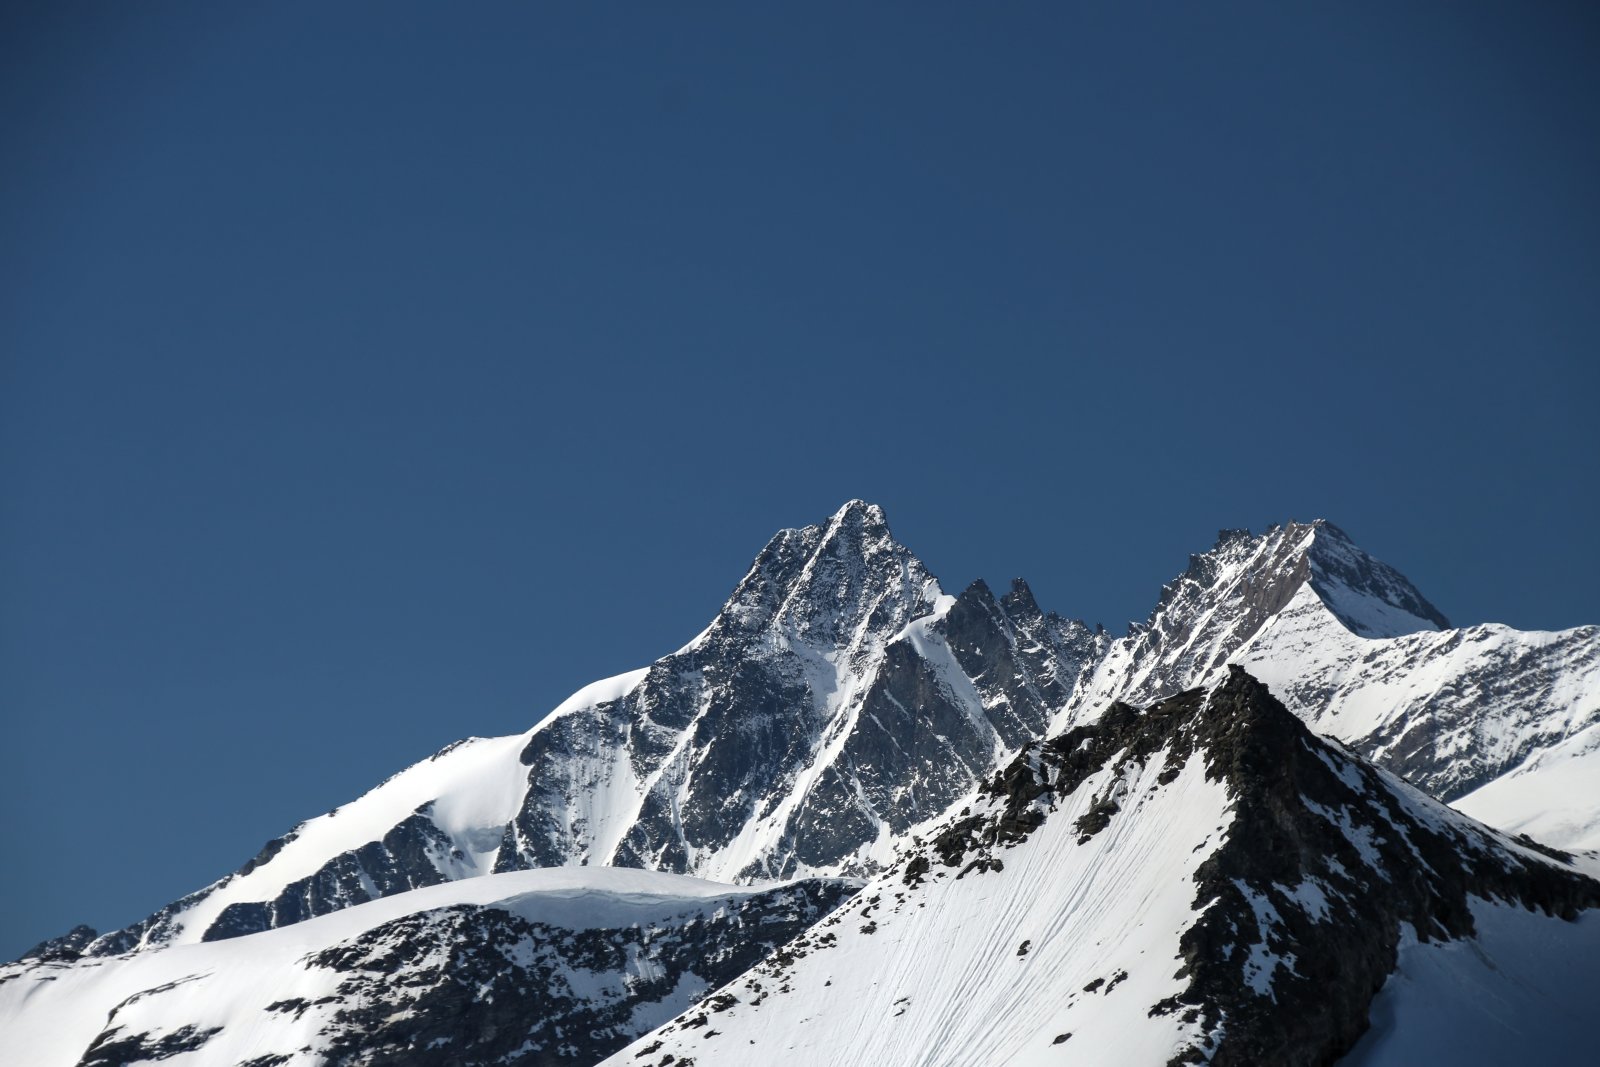 Ausztria legmagasabb pontja a Grossglockner (3798m)